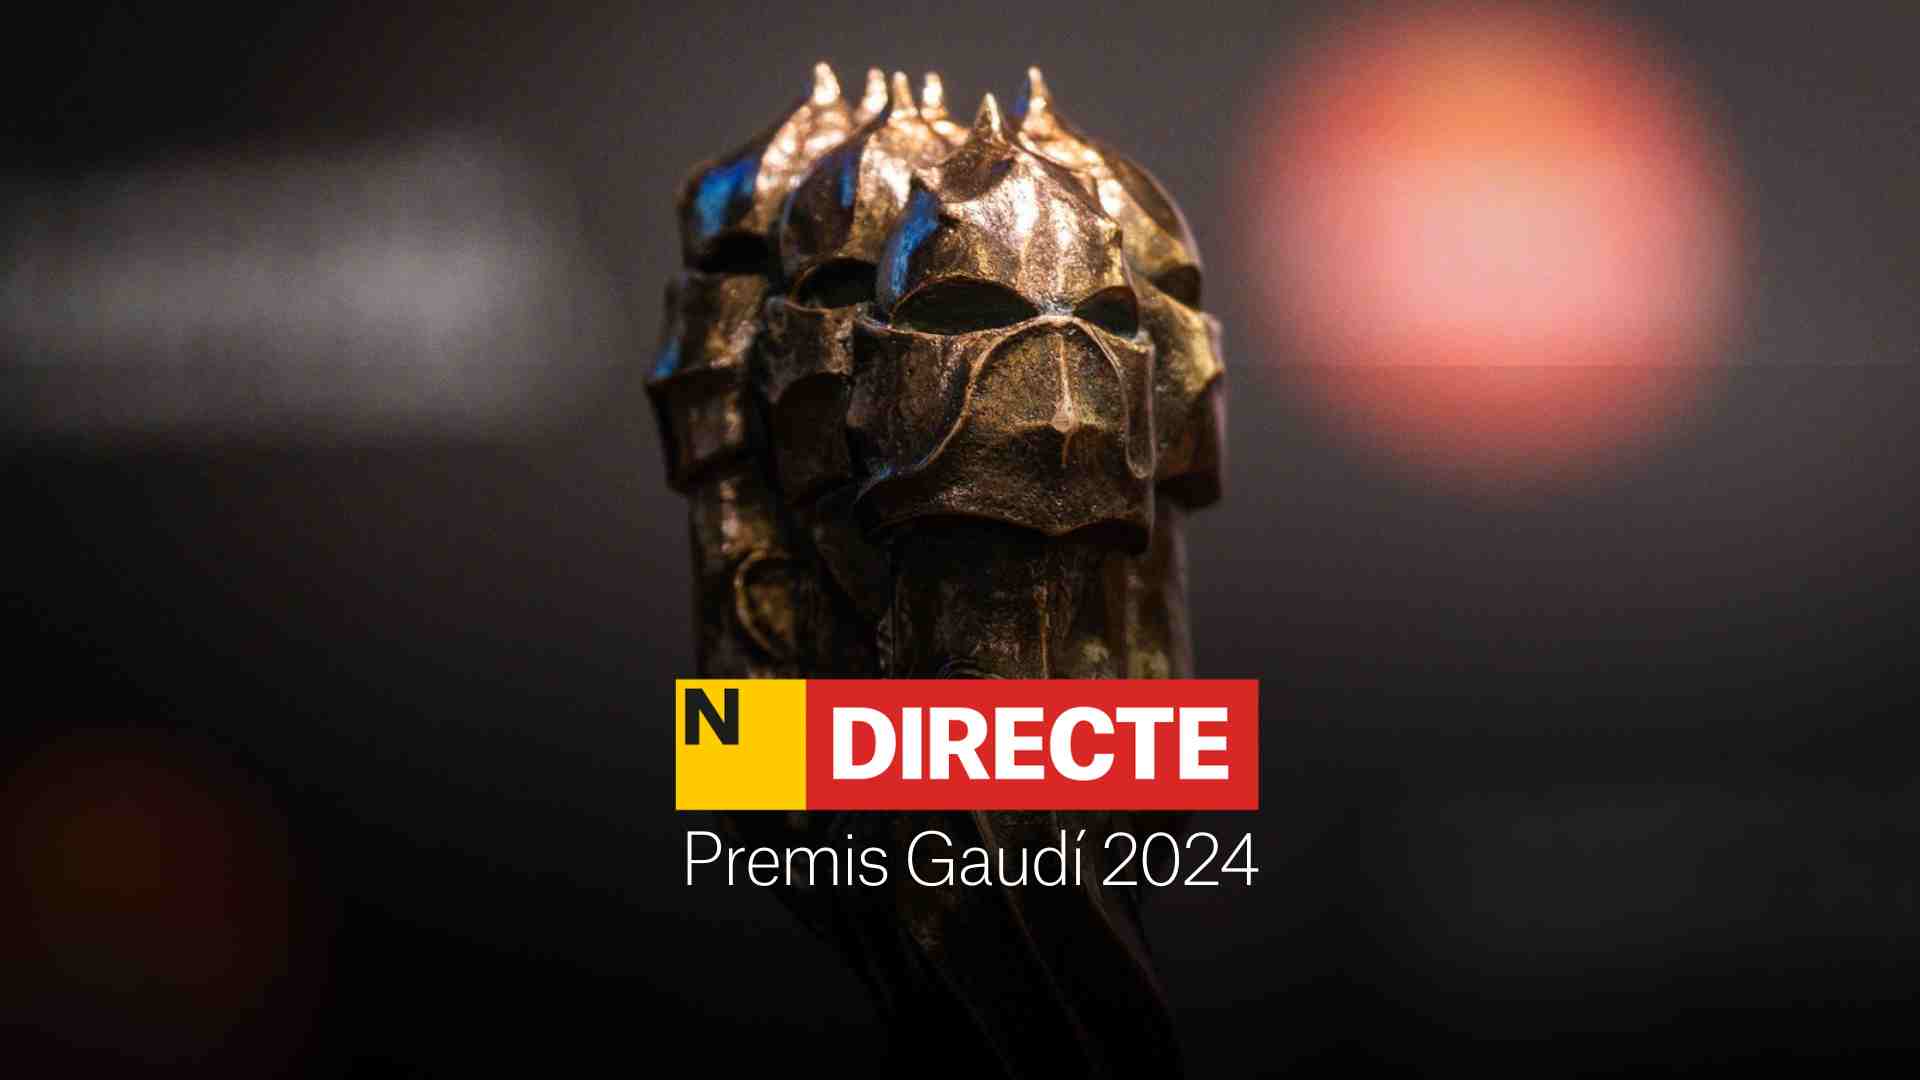 Premis Gaudí 2024, DIRECTE | Guanyadors i última hora de la gala catalana